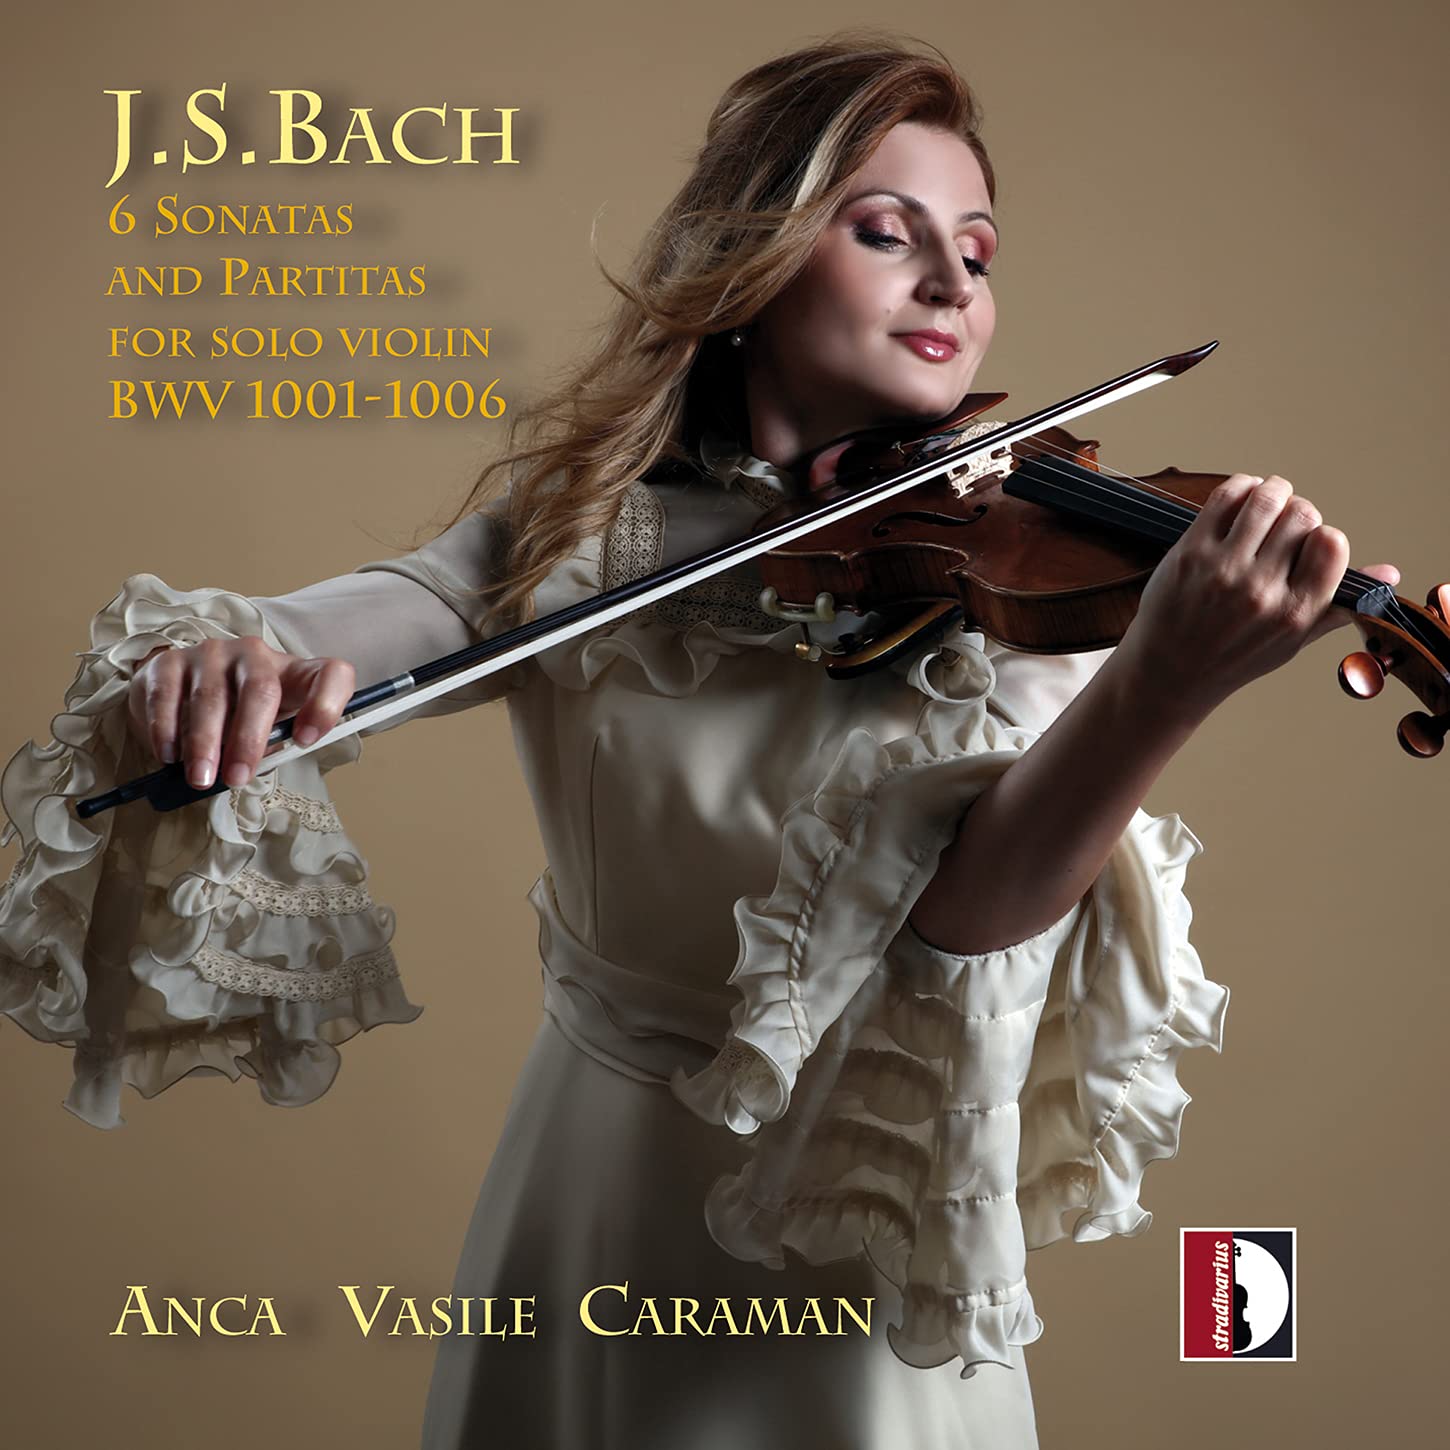 Audio Cd Johann Sebastian Bach - 6 Sonatas & Partitas for Solo Violin, BWVV 1001-1006 (2 Cd) NUOVO SIGILLATO, EDIZIONE DEL 30/07/2021 SUBITO DISPONIBILE